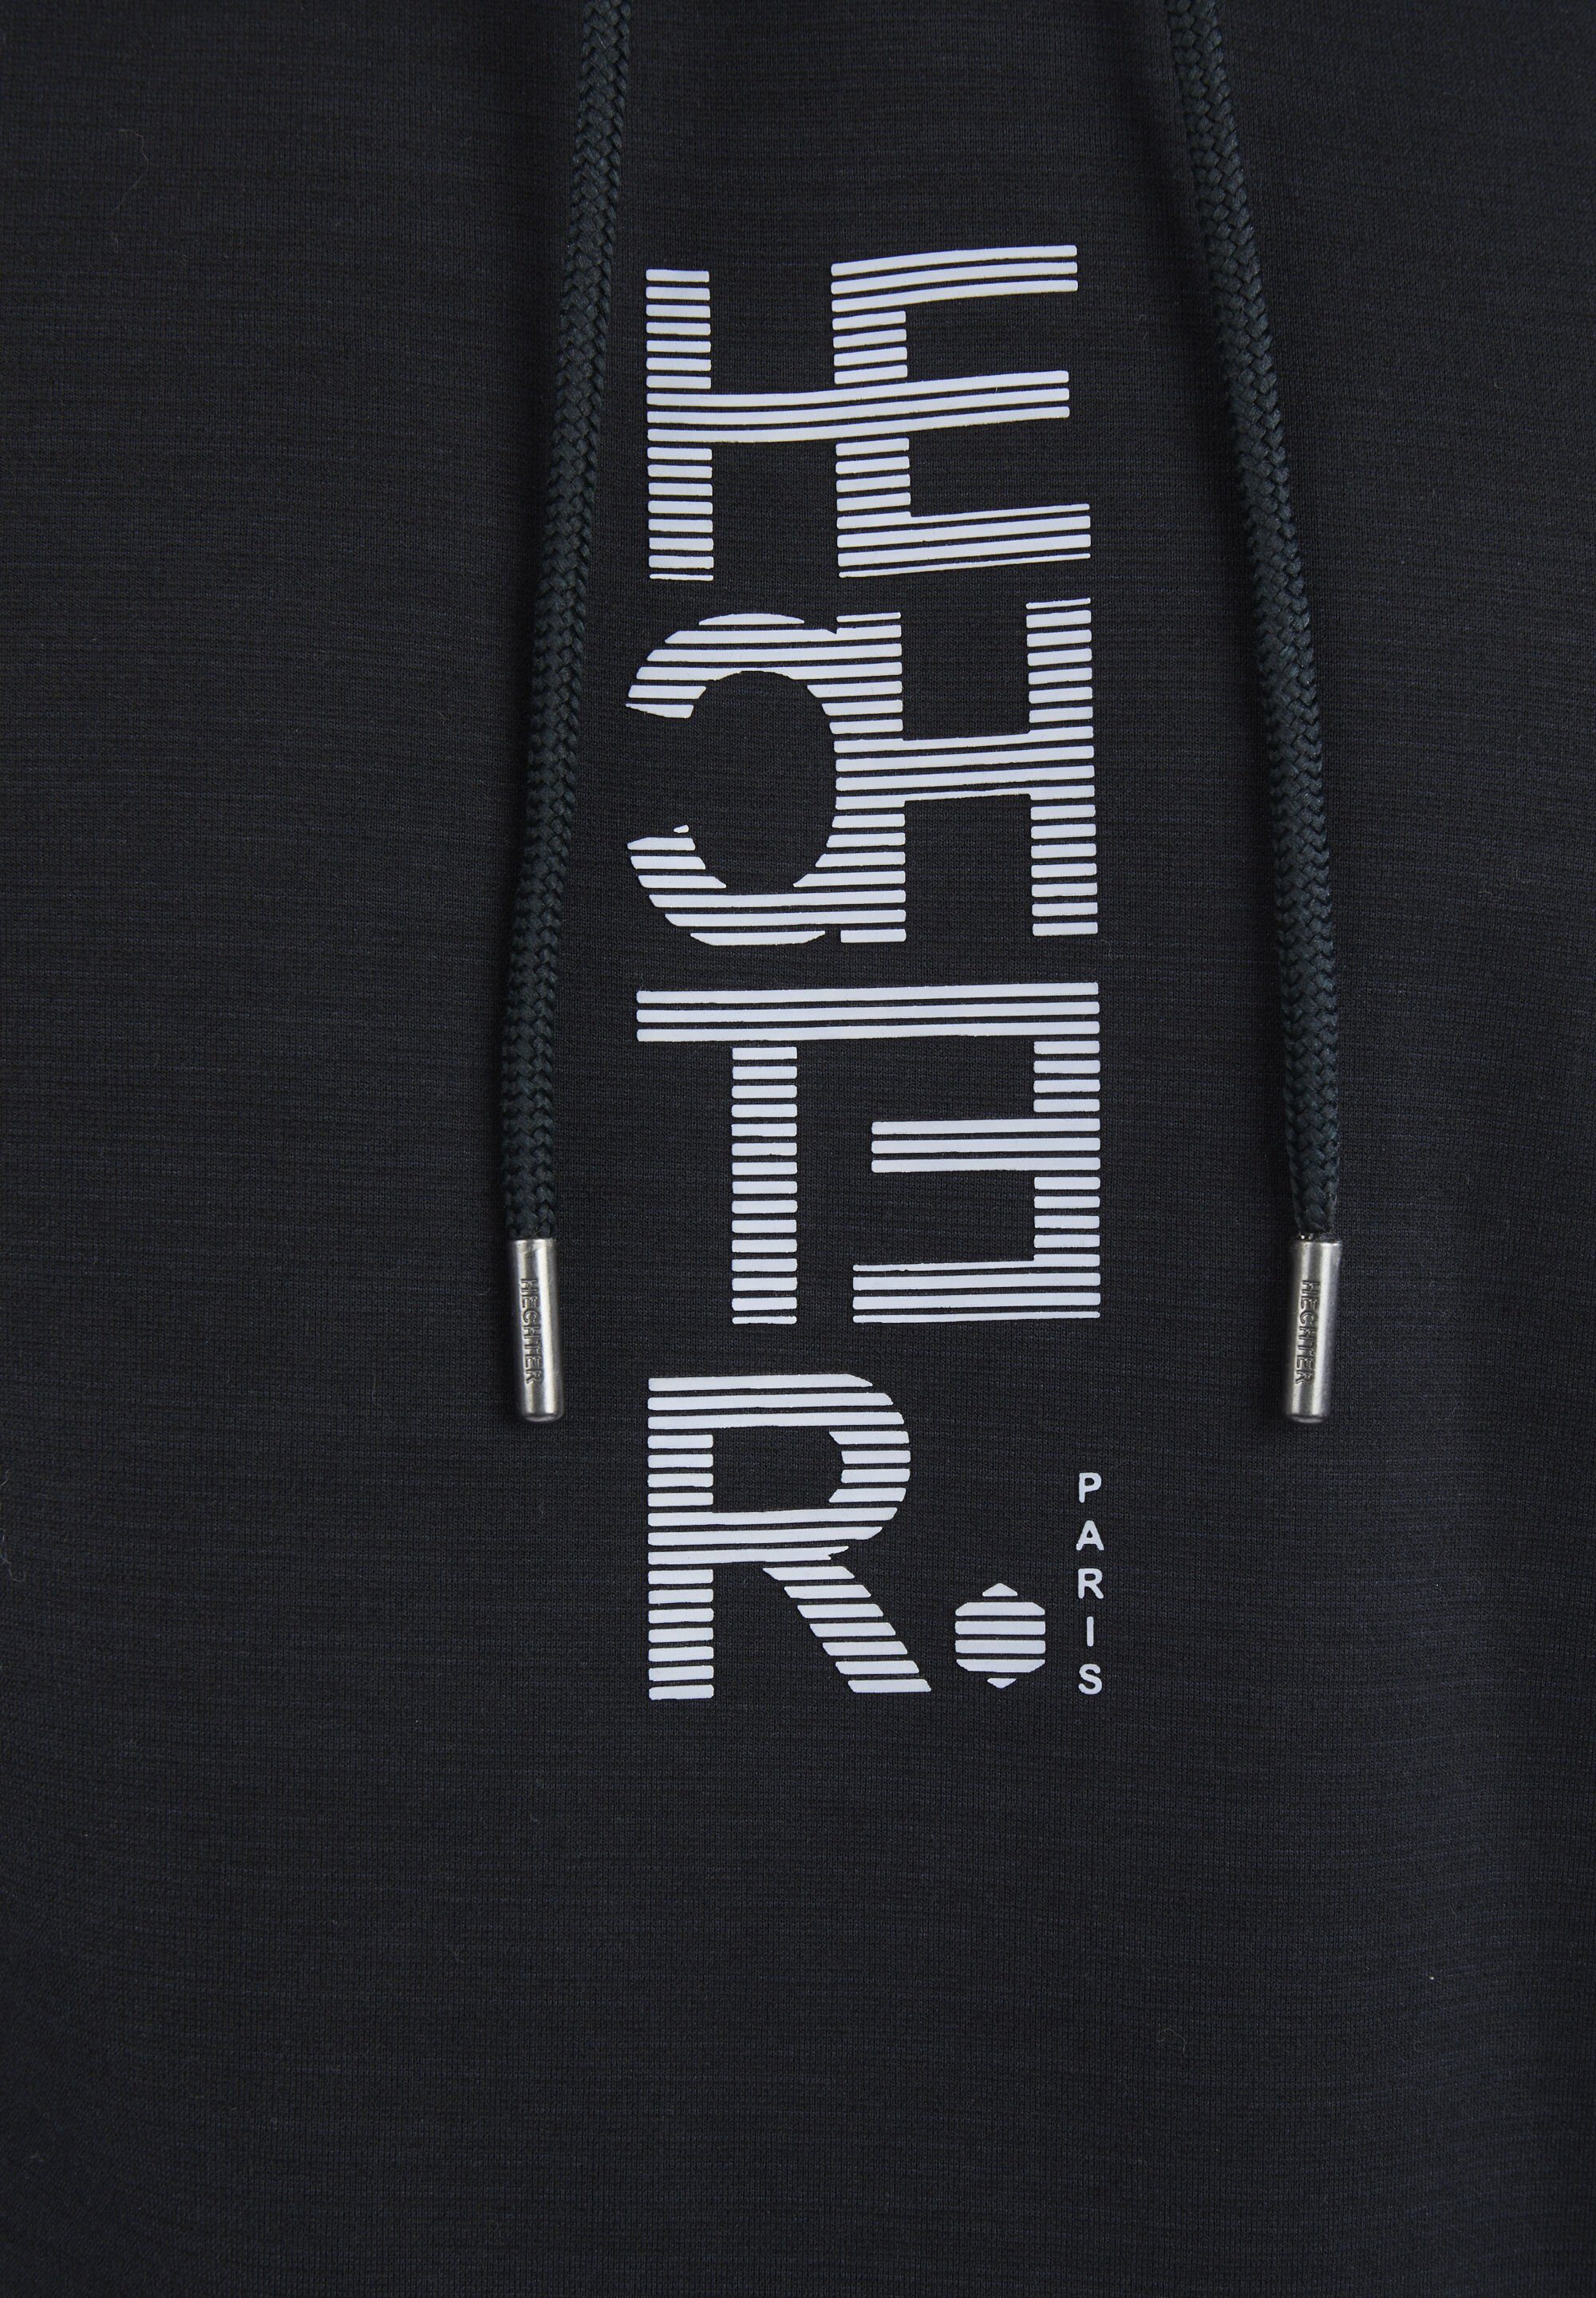 HECHTER PARIS print Sweatshirt